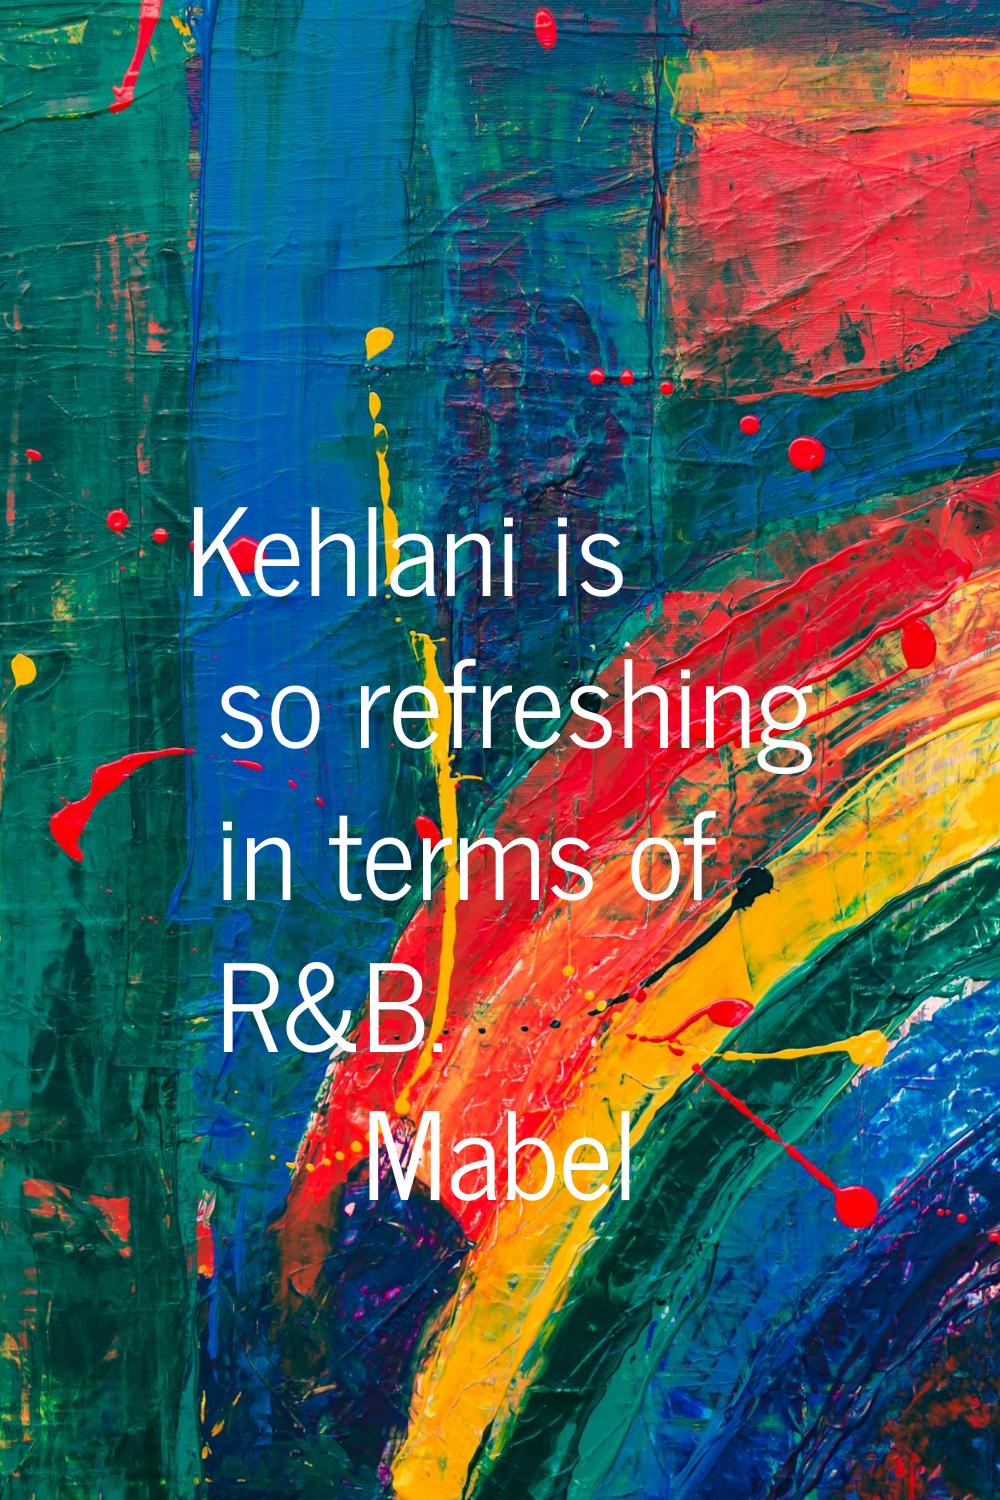 Kehlani is so refreshing in terms of R&B.